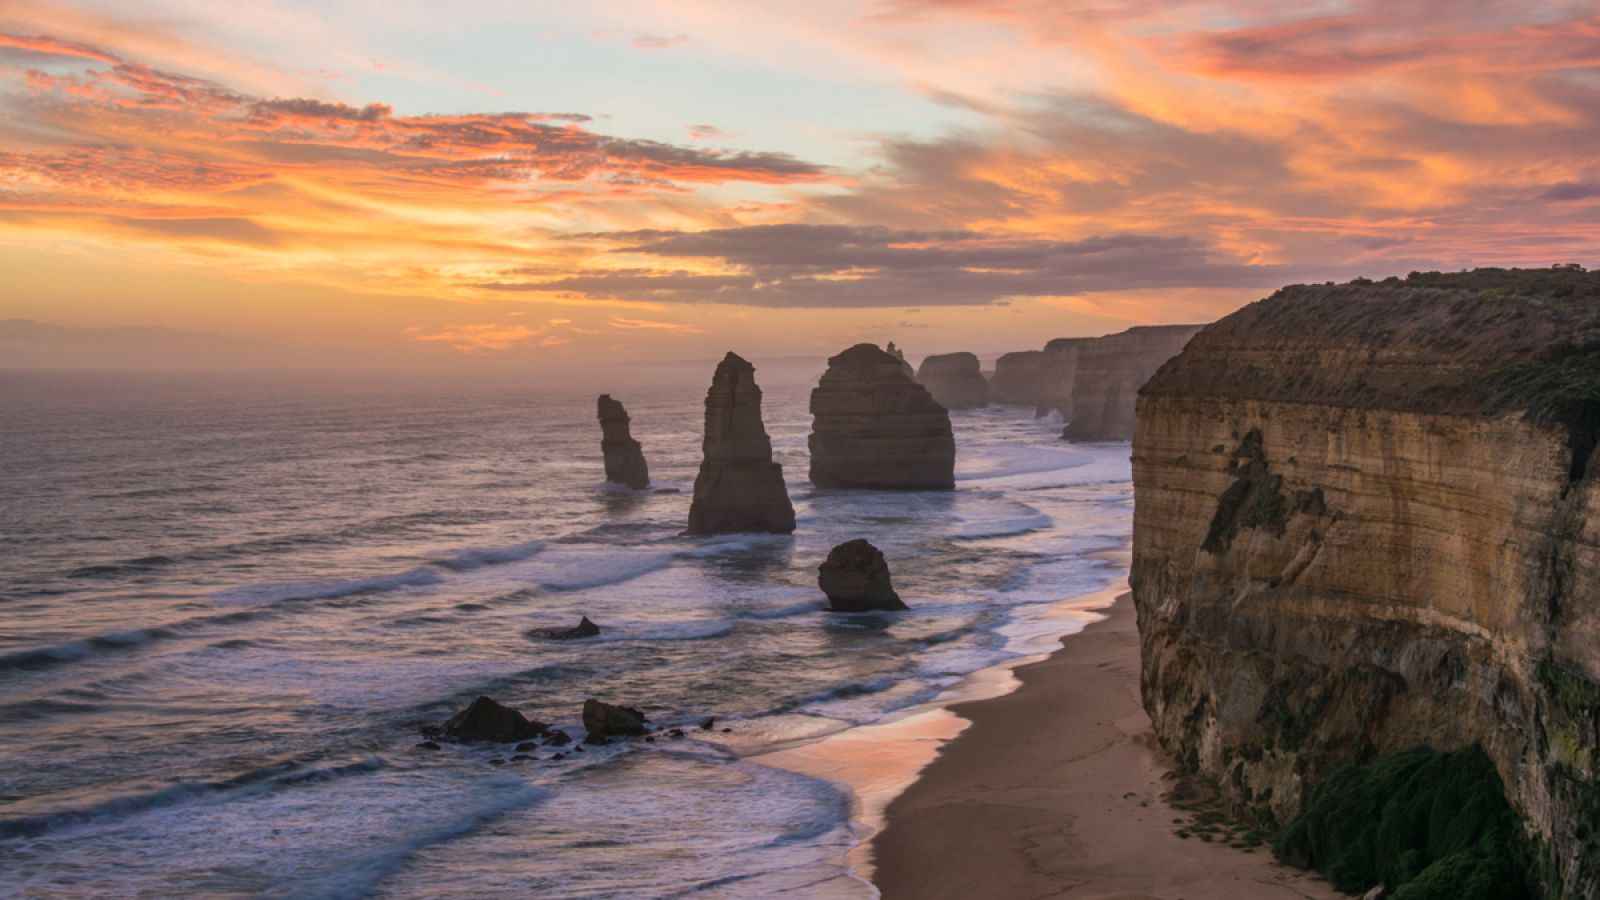 Los "Doce apóstoles" formaron parte de un gran acantilado de caliza en el sur de Australia.